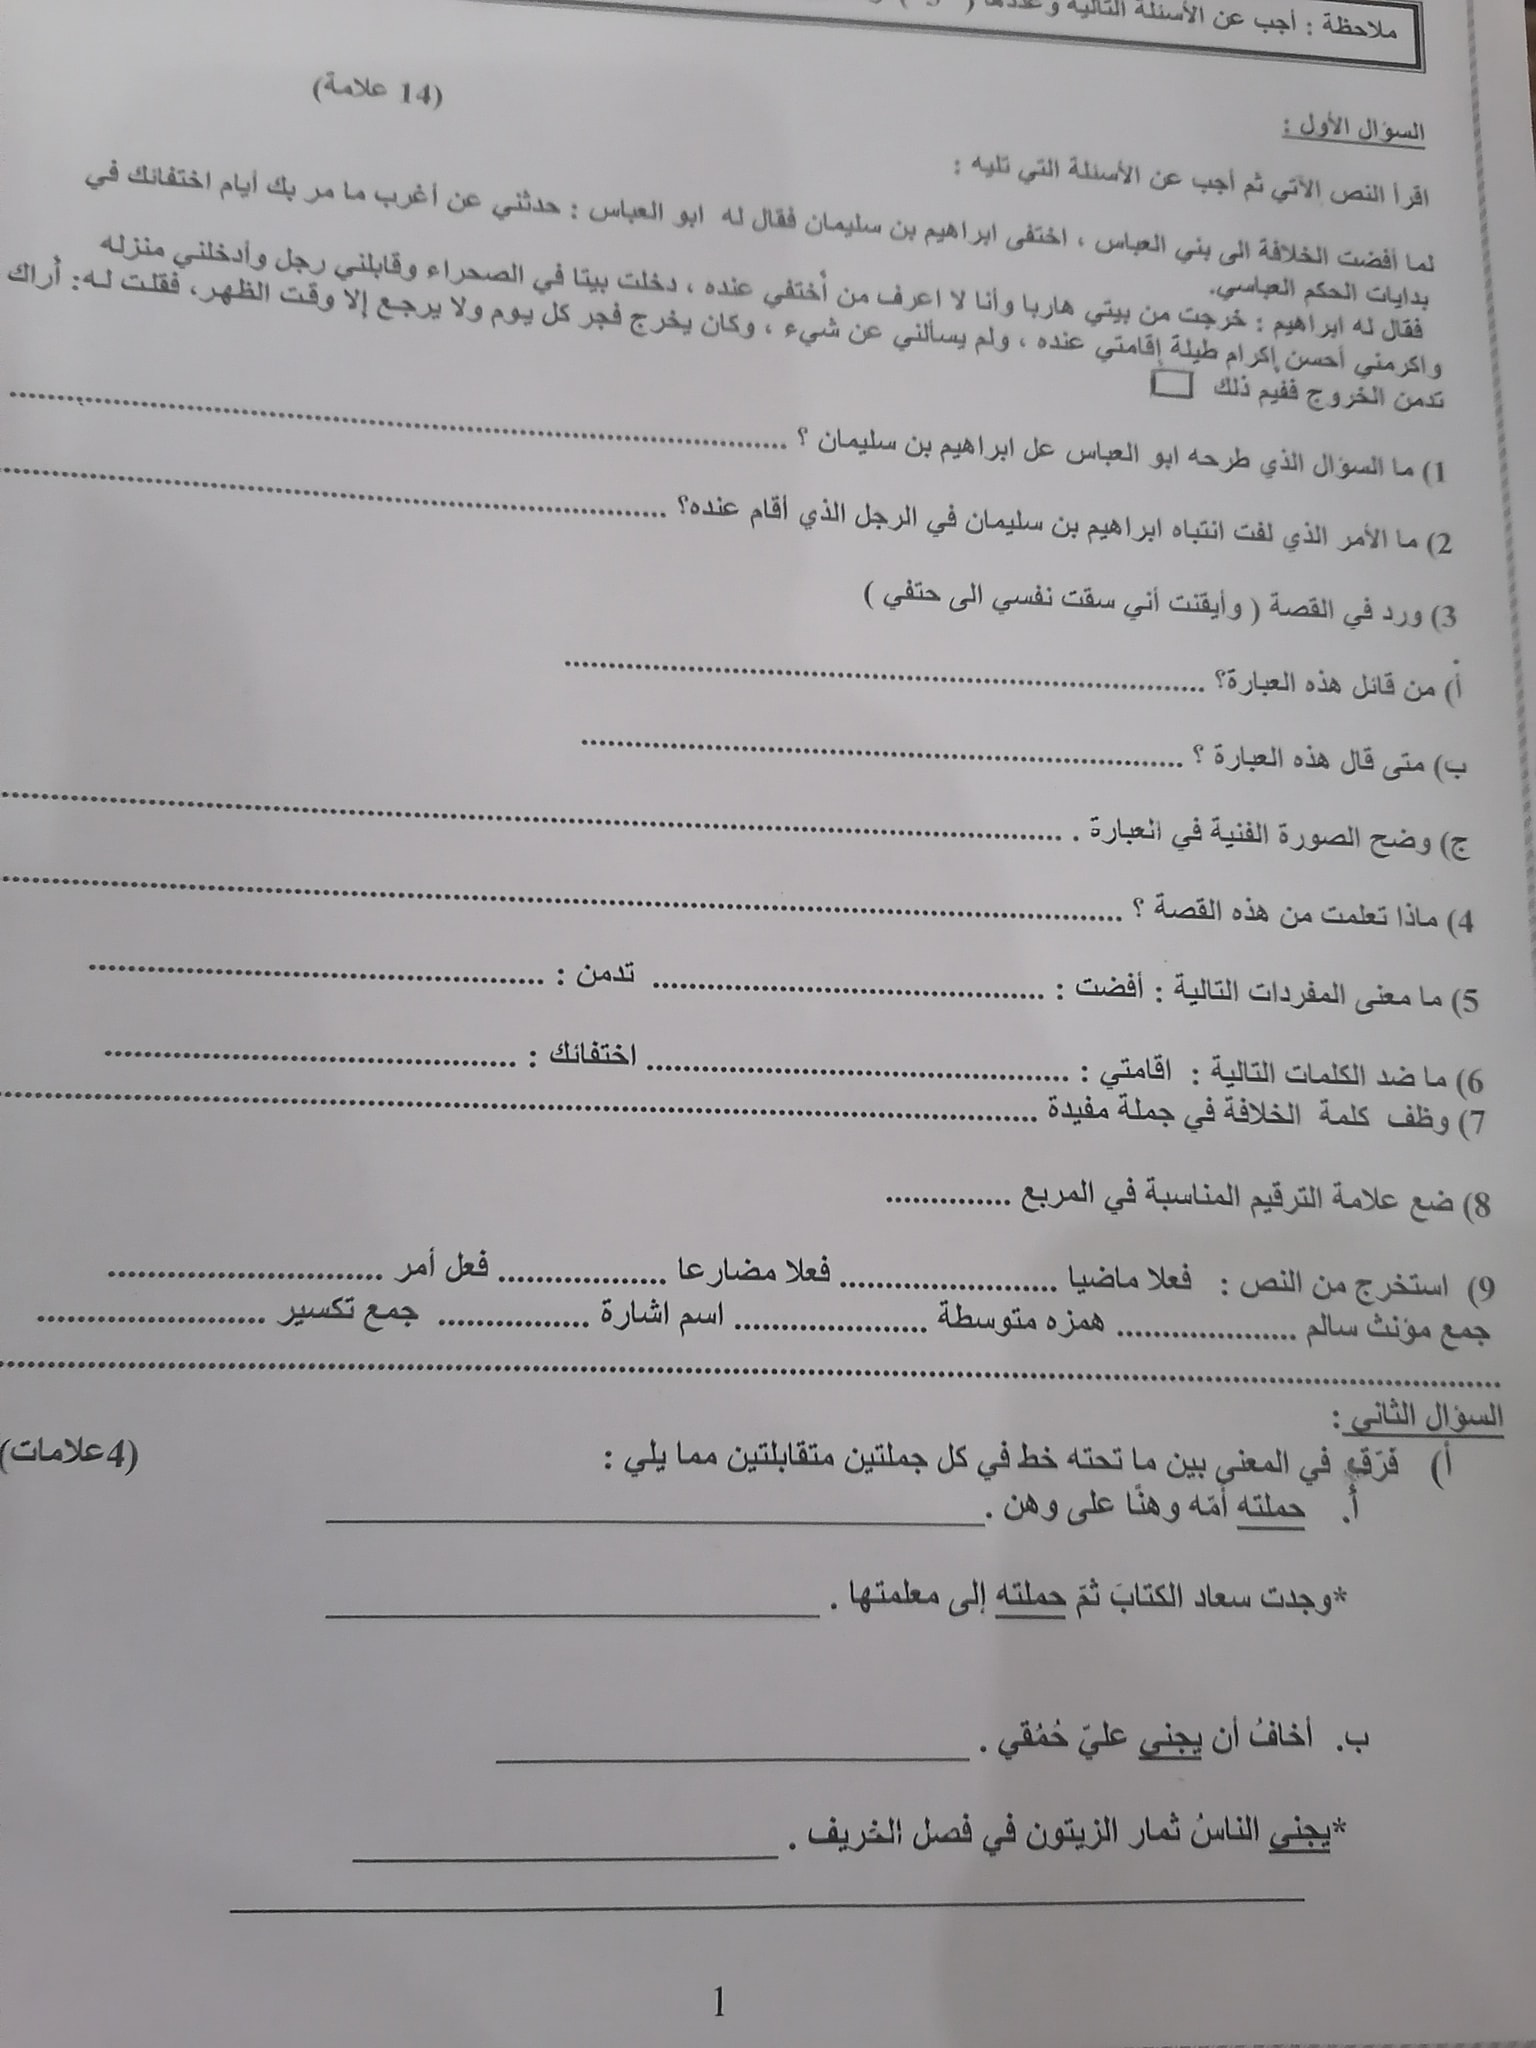 1 صور اختبار اللغة العربية النهائي للصف السادس الفصل الاول 2021.jpg